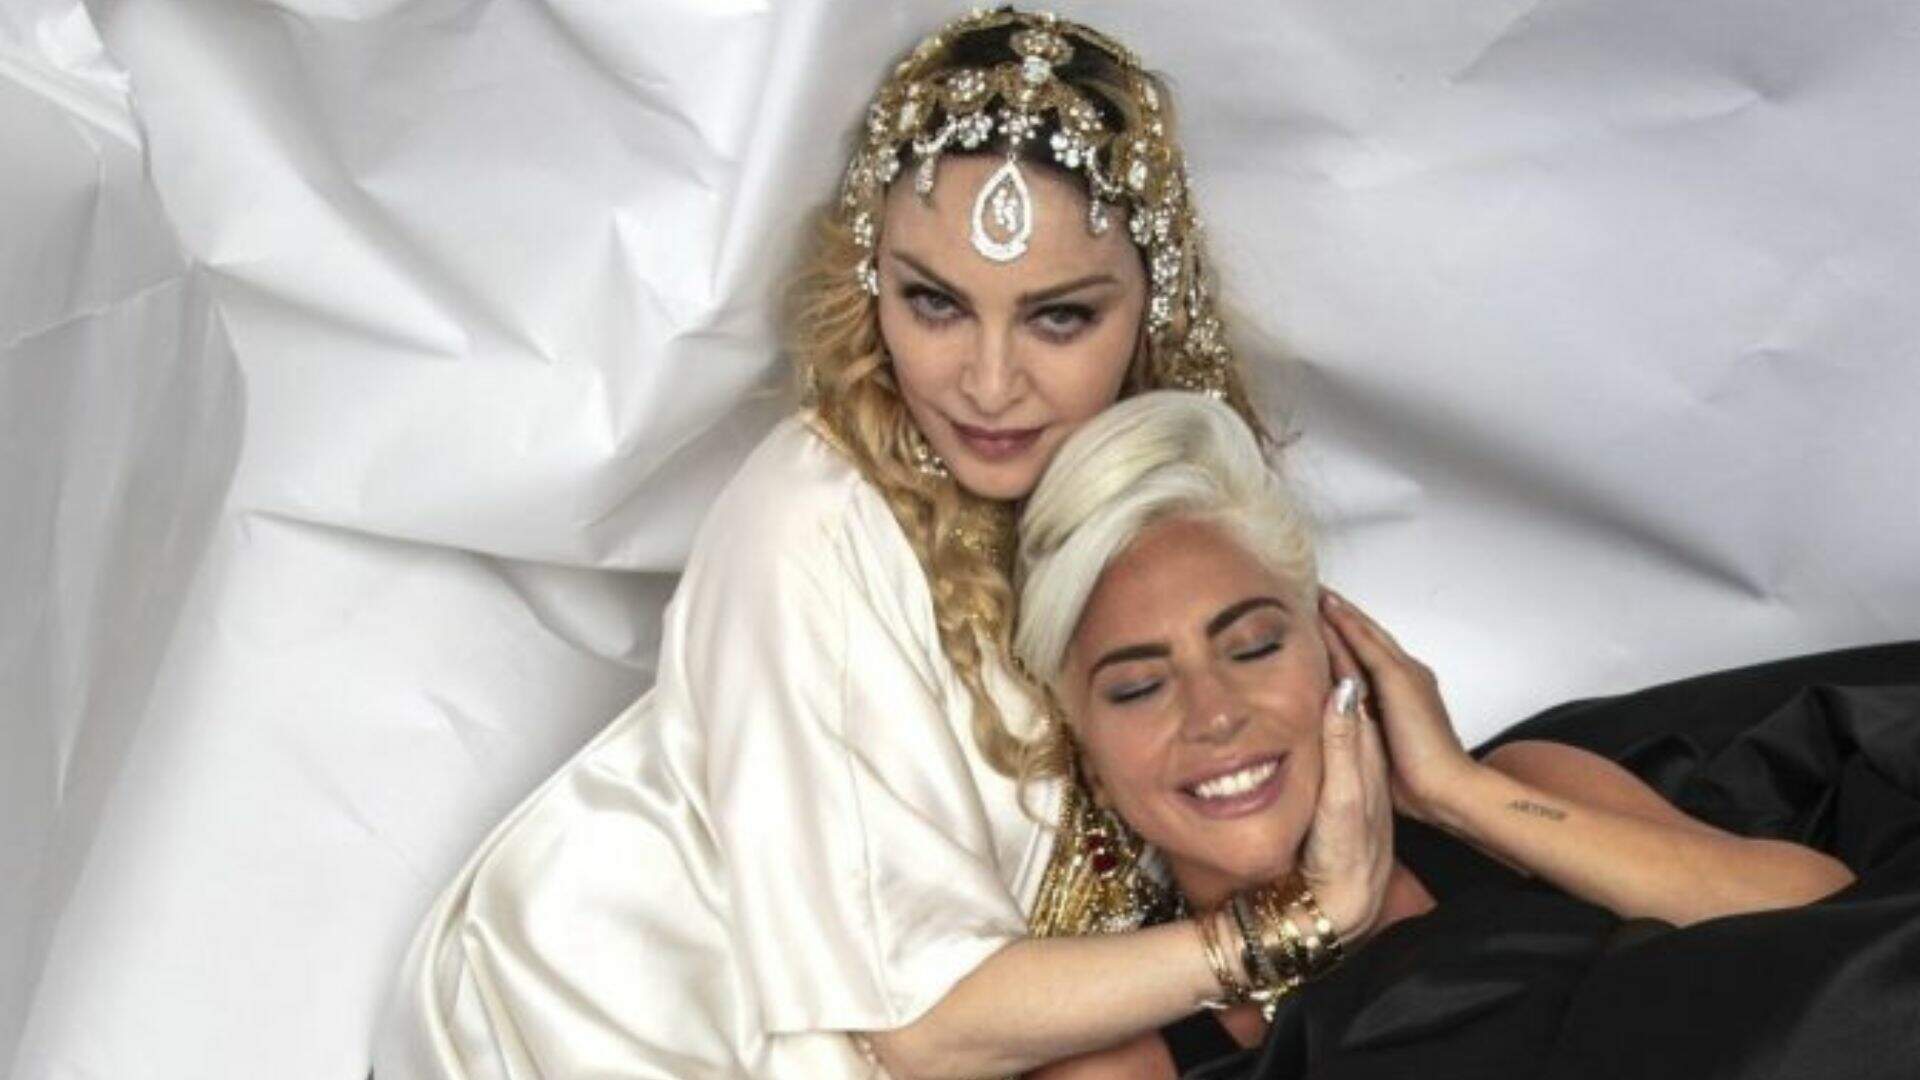 Madonna e Lady Gaga